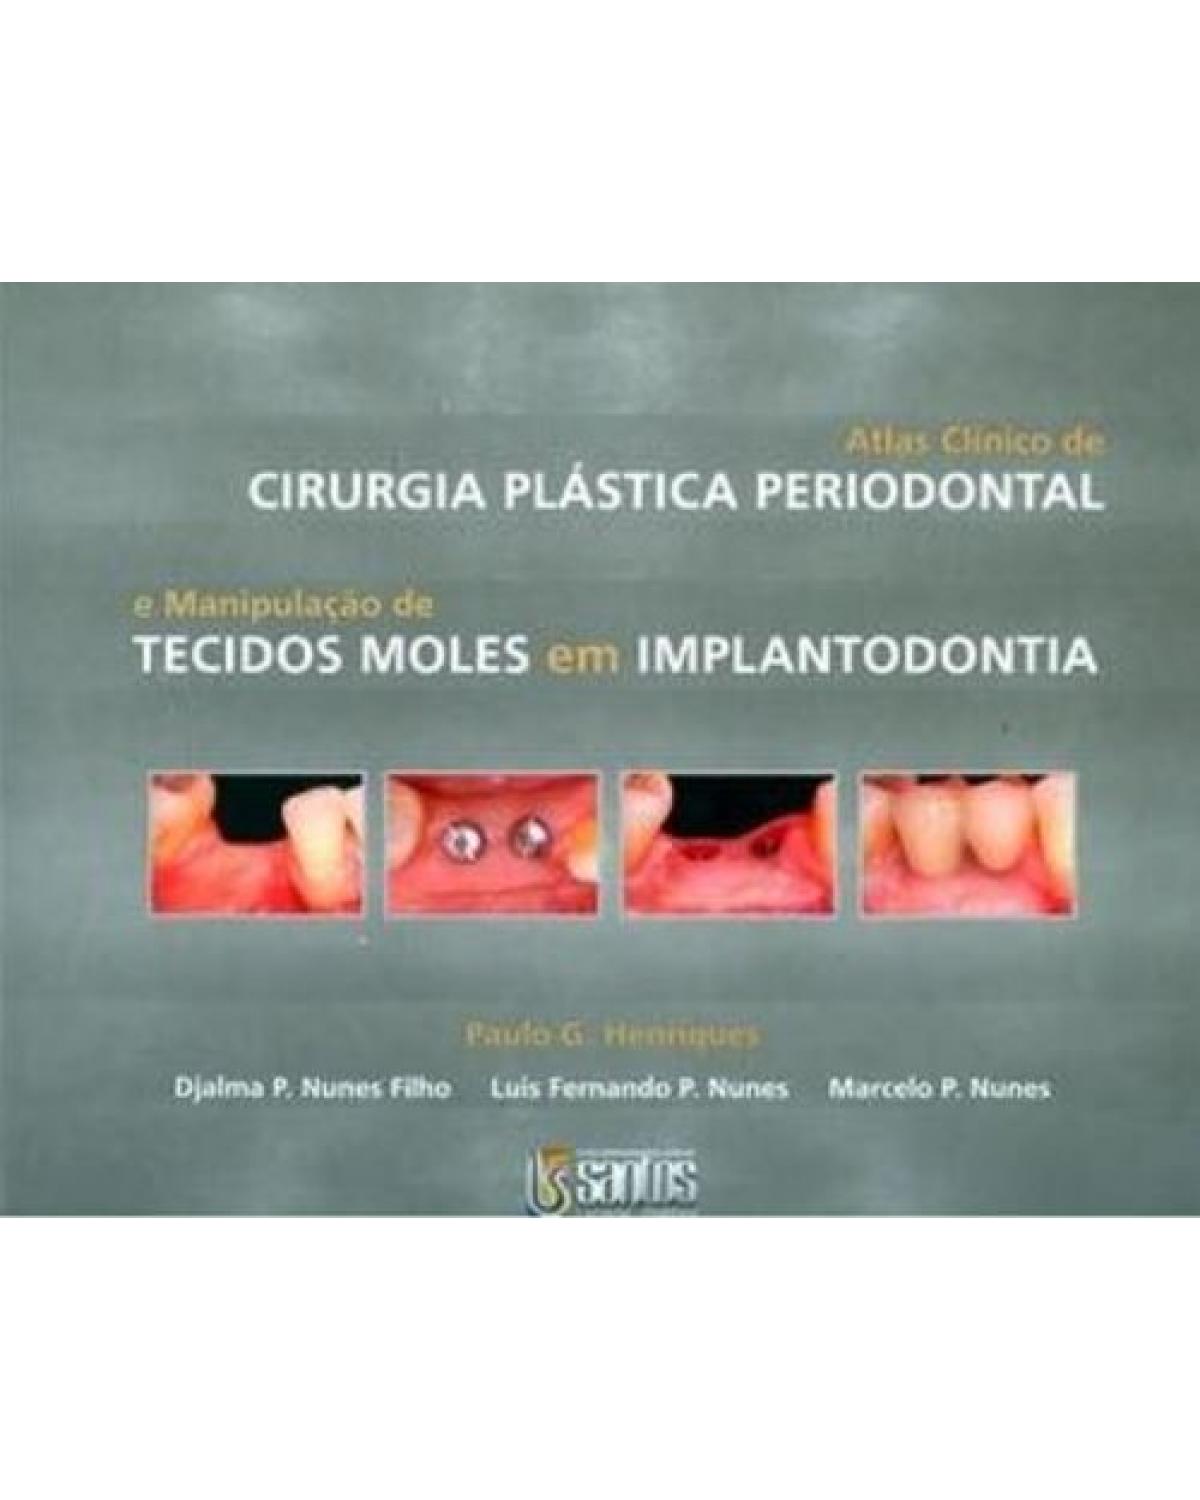 Atlas clínico de cirurgia plástica periodontal - E manipulação de tecidos moles em implantodontia - 1ª Edição | 2007